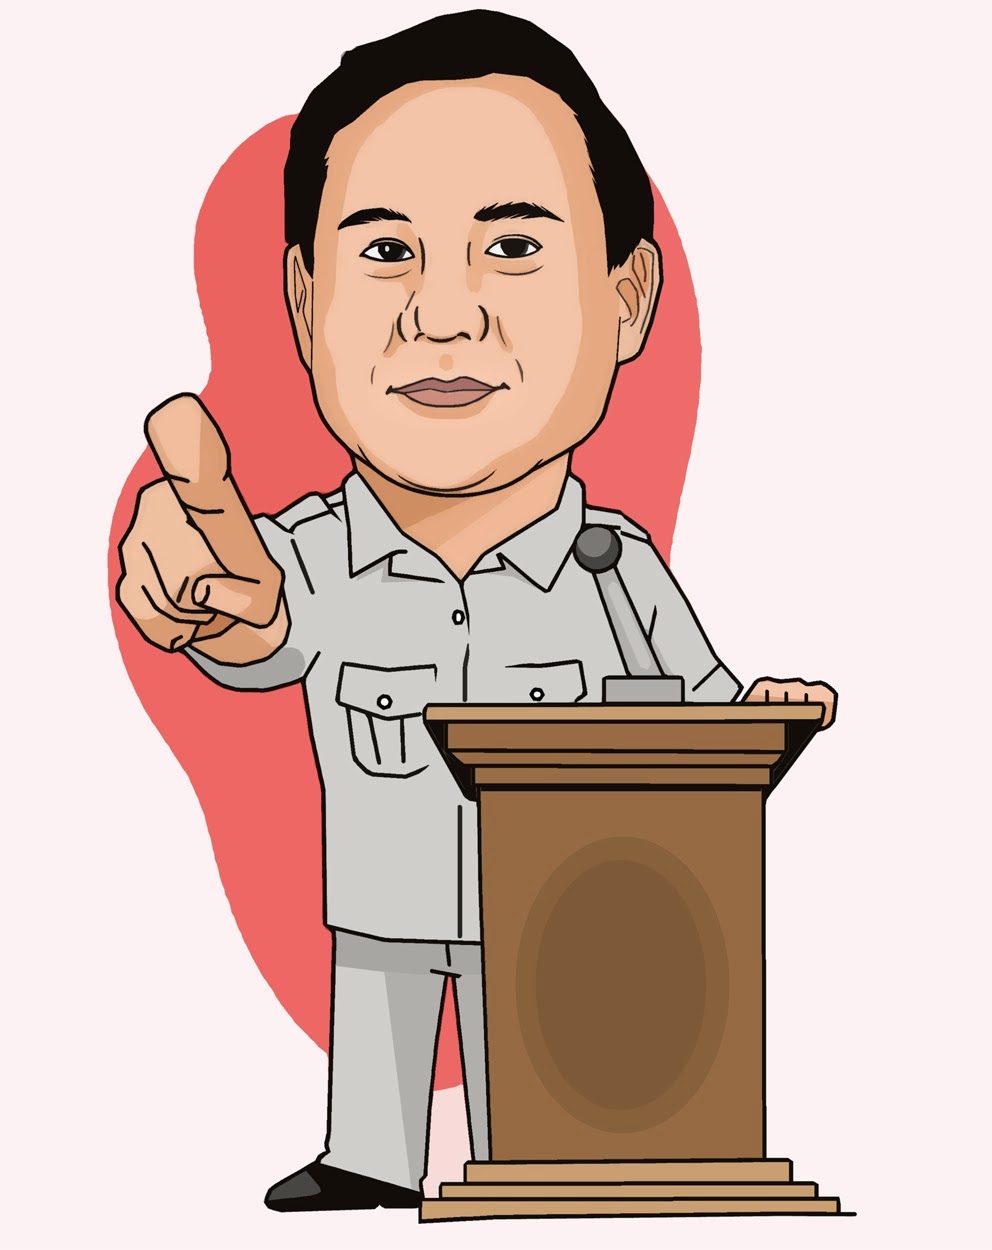 Jokowi Dan Megawati Karikatur  www.imgkid.com  The Image Kid Has It!